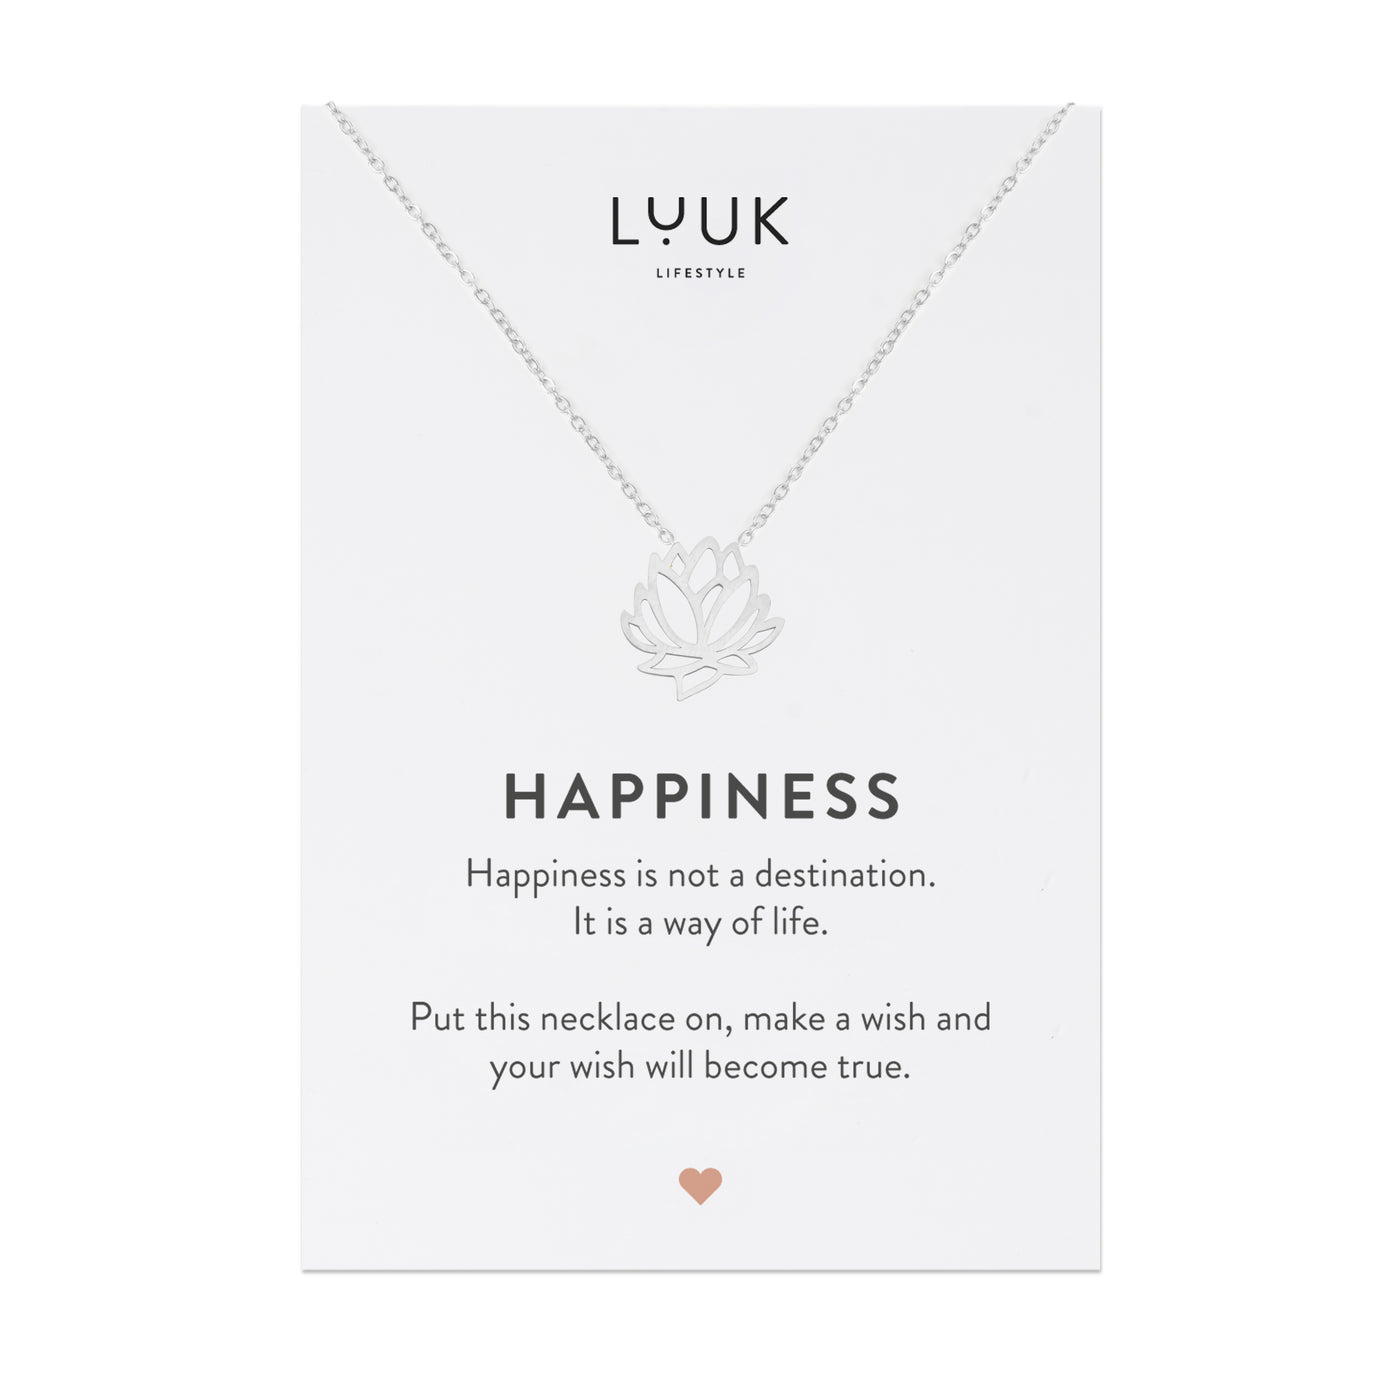 Halskette mit Lotusblüten Anhänger auf motivierender Happiness Spruchkarte von der Brand Luuk Lifestyle